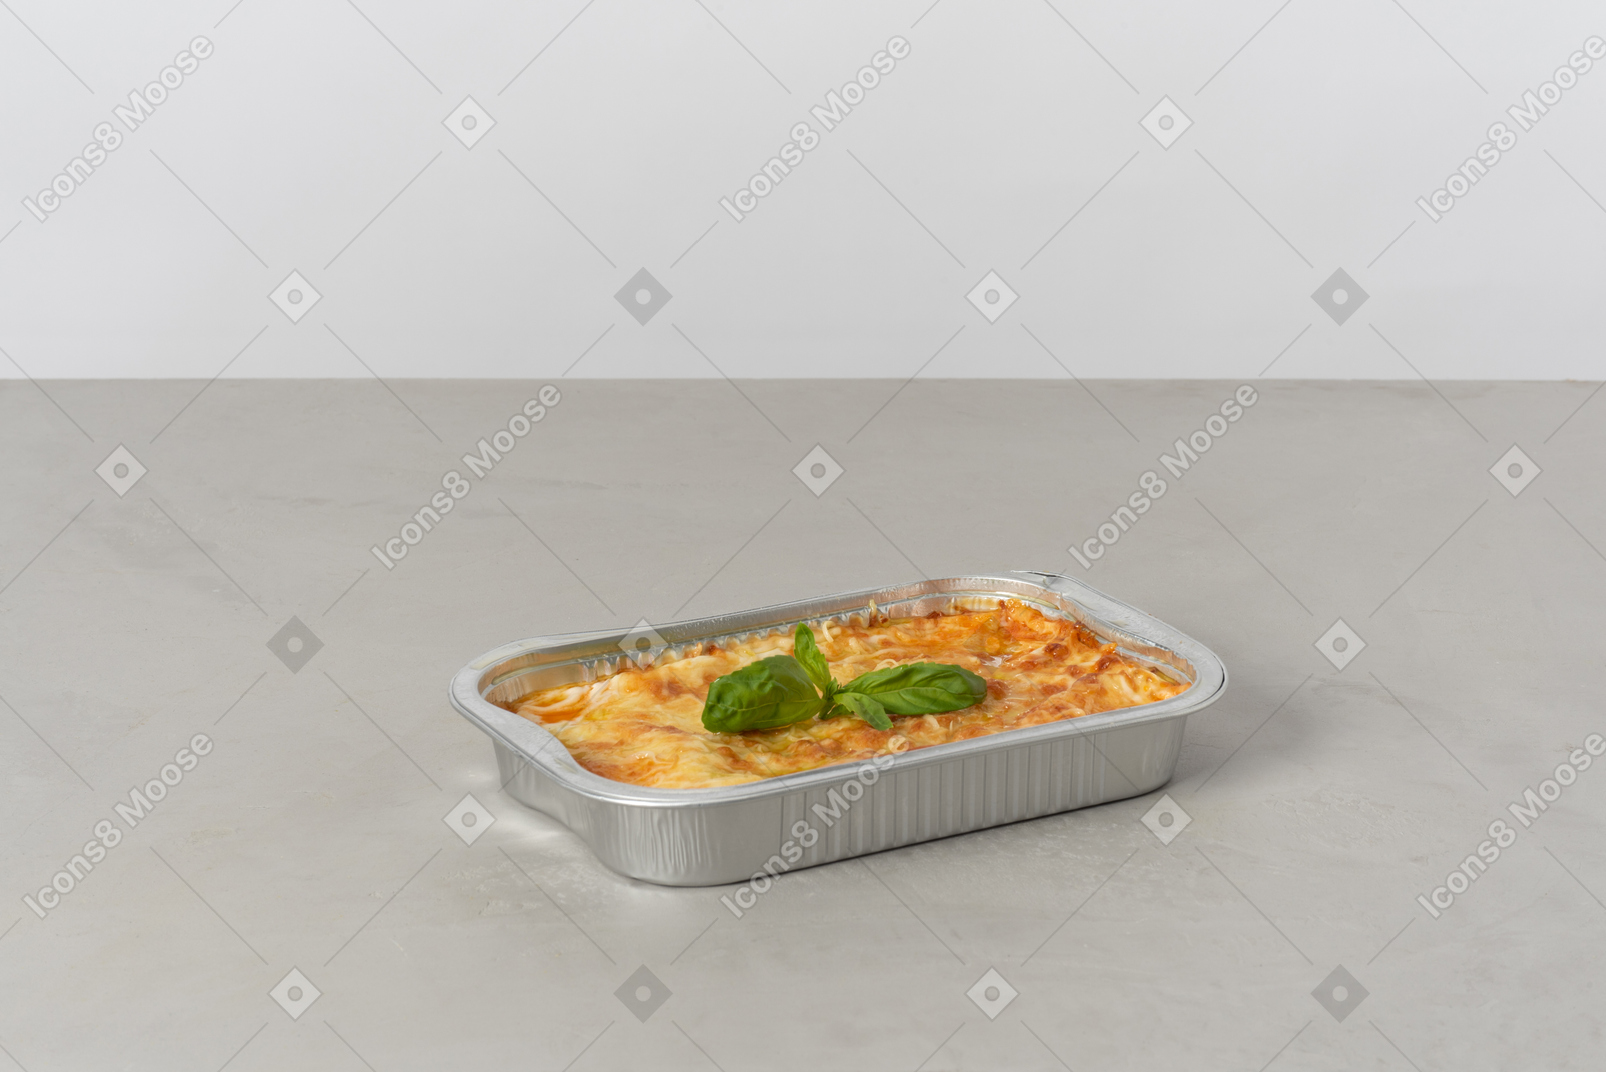 Piece of lasagna in oven pan